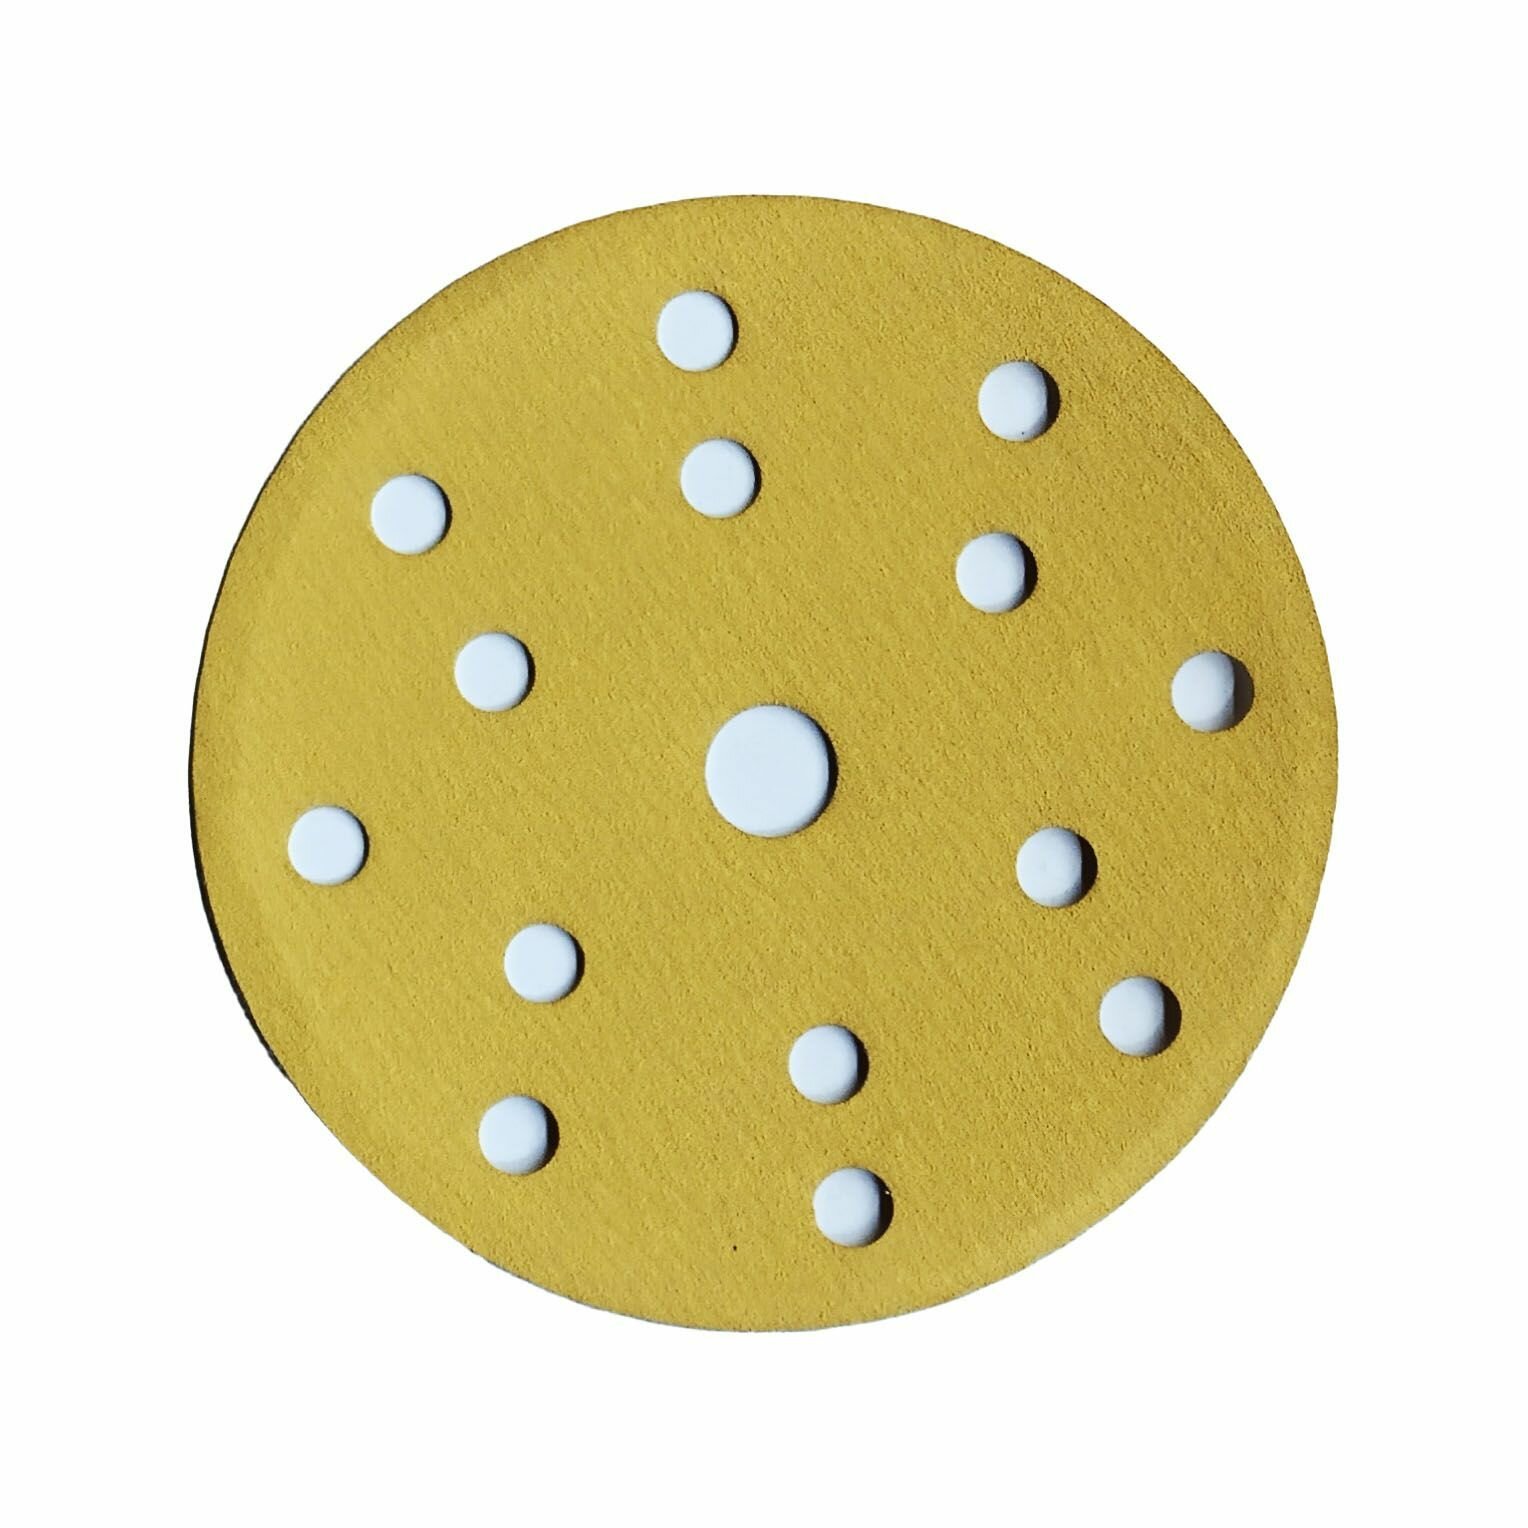 Абразивный шлифовальный круг на бумажной основе VX-Gold под липучку 150 мм зернистость P220 15 отверстий. Набор из 20 штук